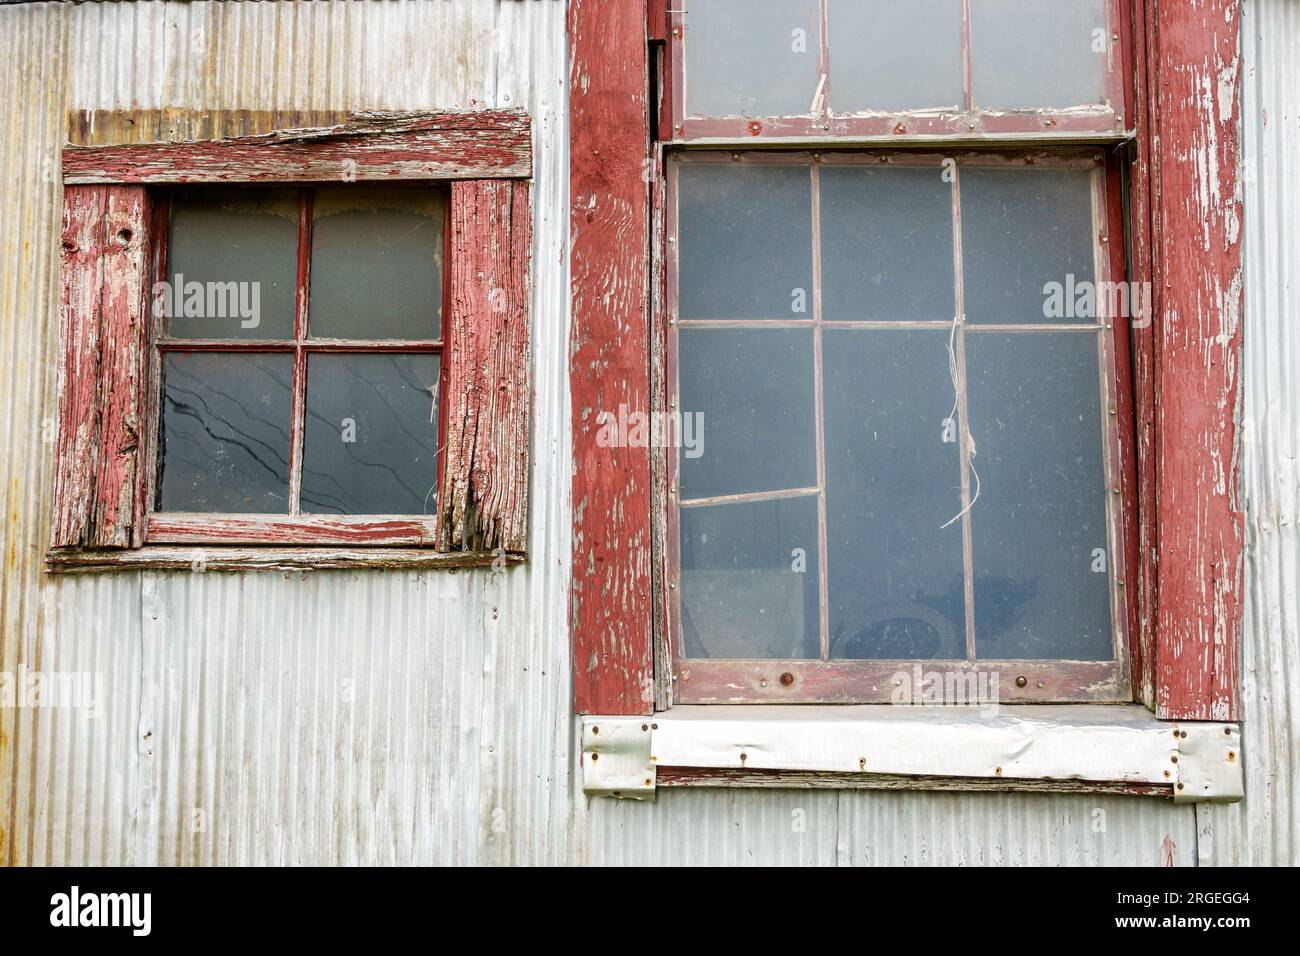 Ellenboro North Carolina, Colfax Cotton Gin geschlossen, leerstehende Wohnung geschlossen, Arbeitsplatzverluste in der Agrarwirtschaft, Fenster bauen Stockfoto